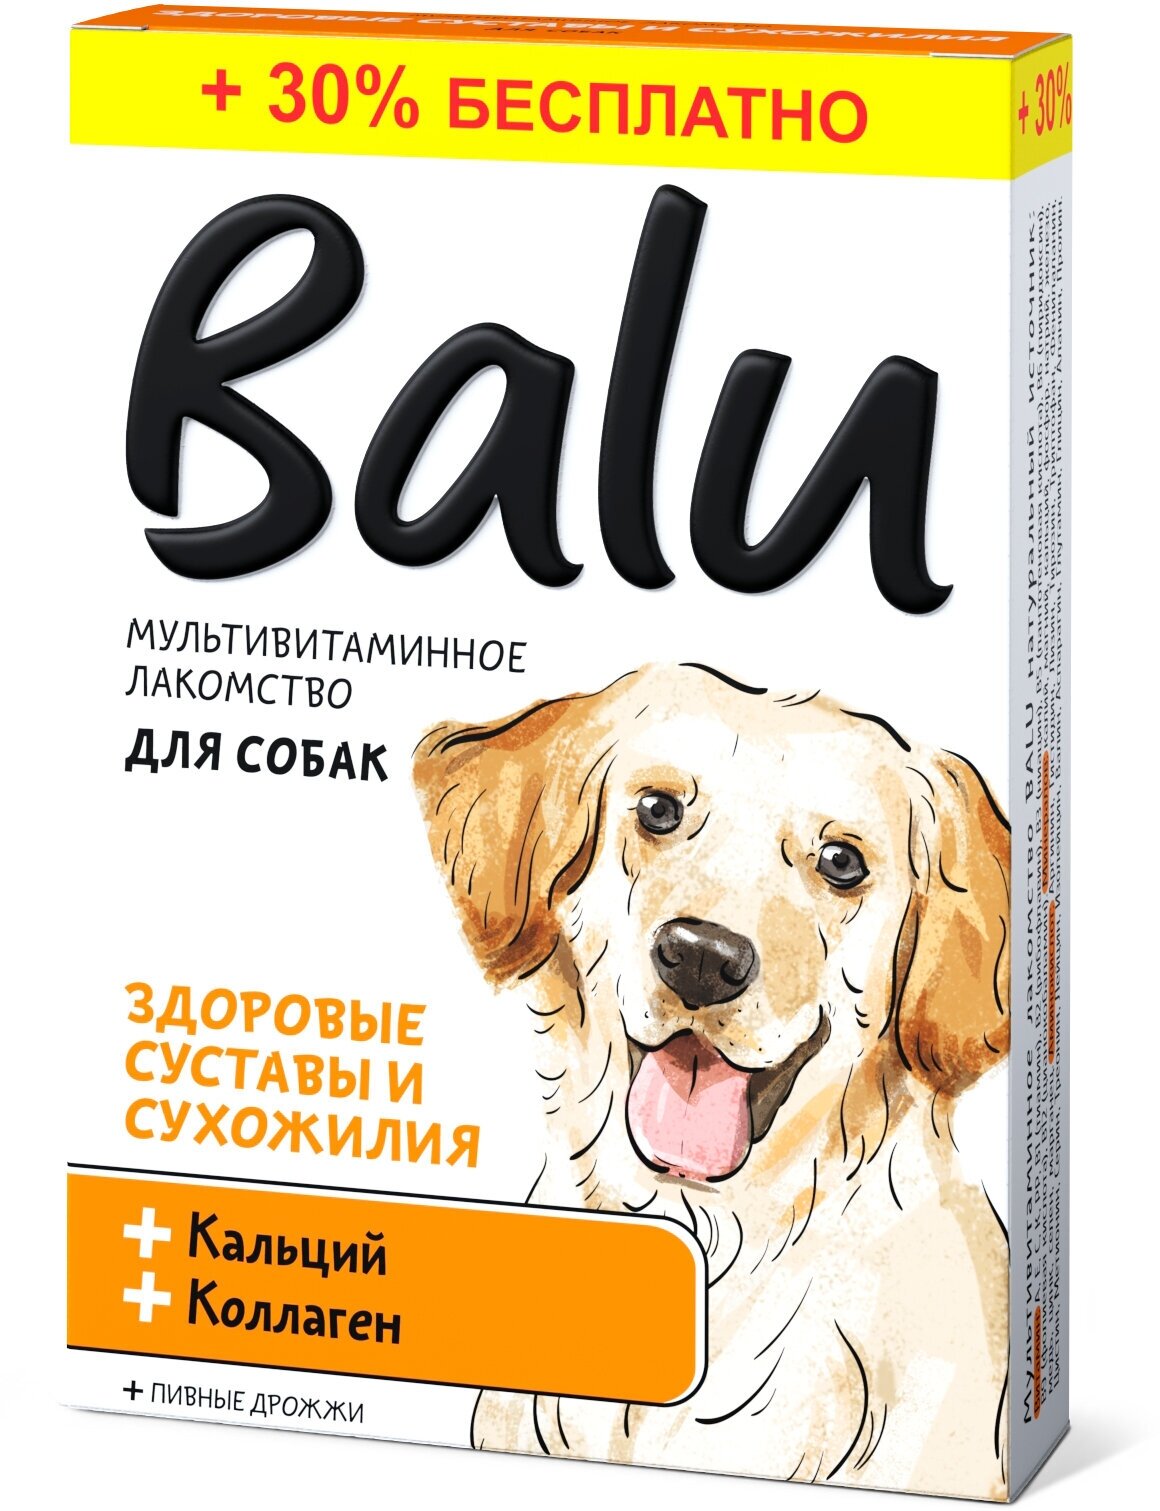 Лакомство мультивитаминное Balu для собак "Здоровые суставы и сухожилия" кальций и коллаген, 130 таб.